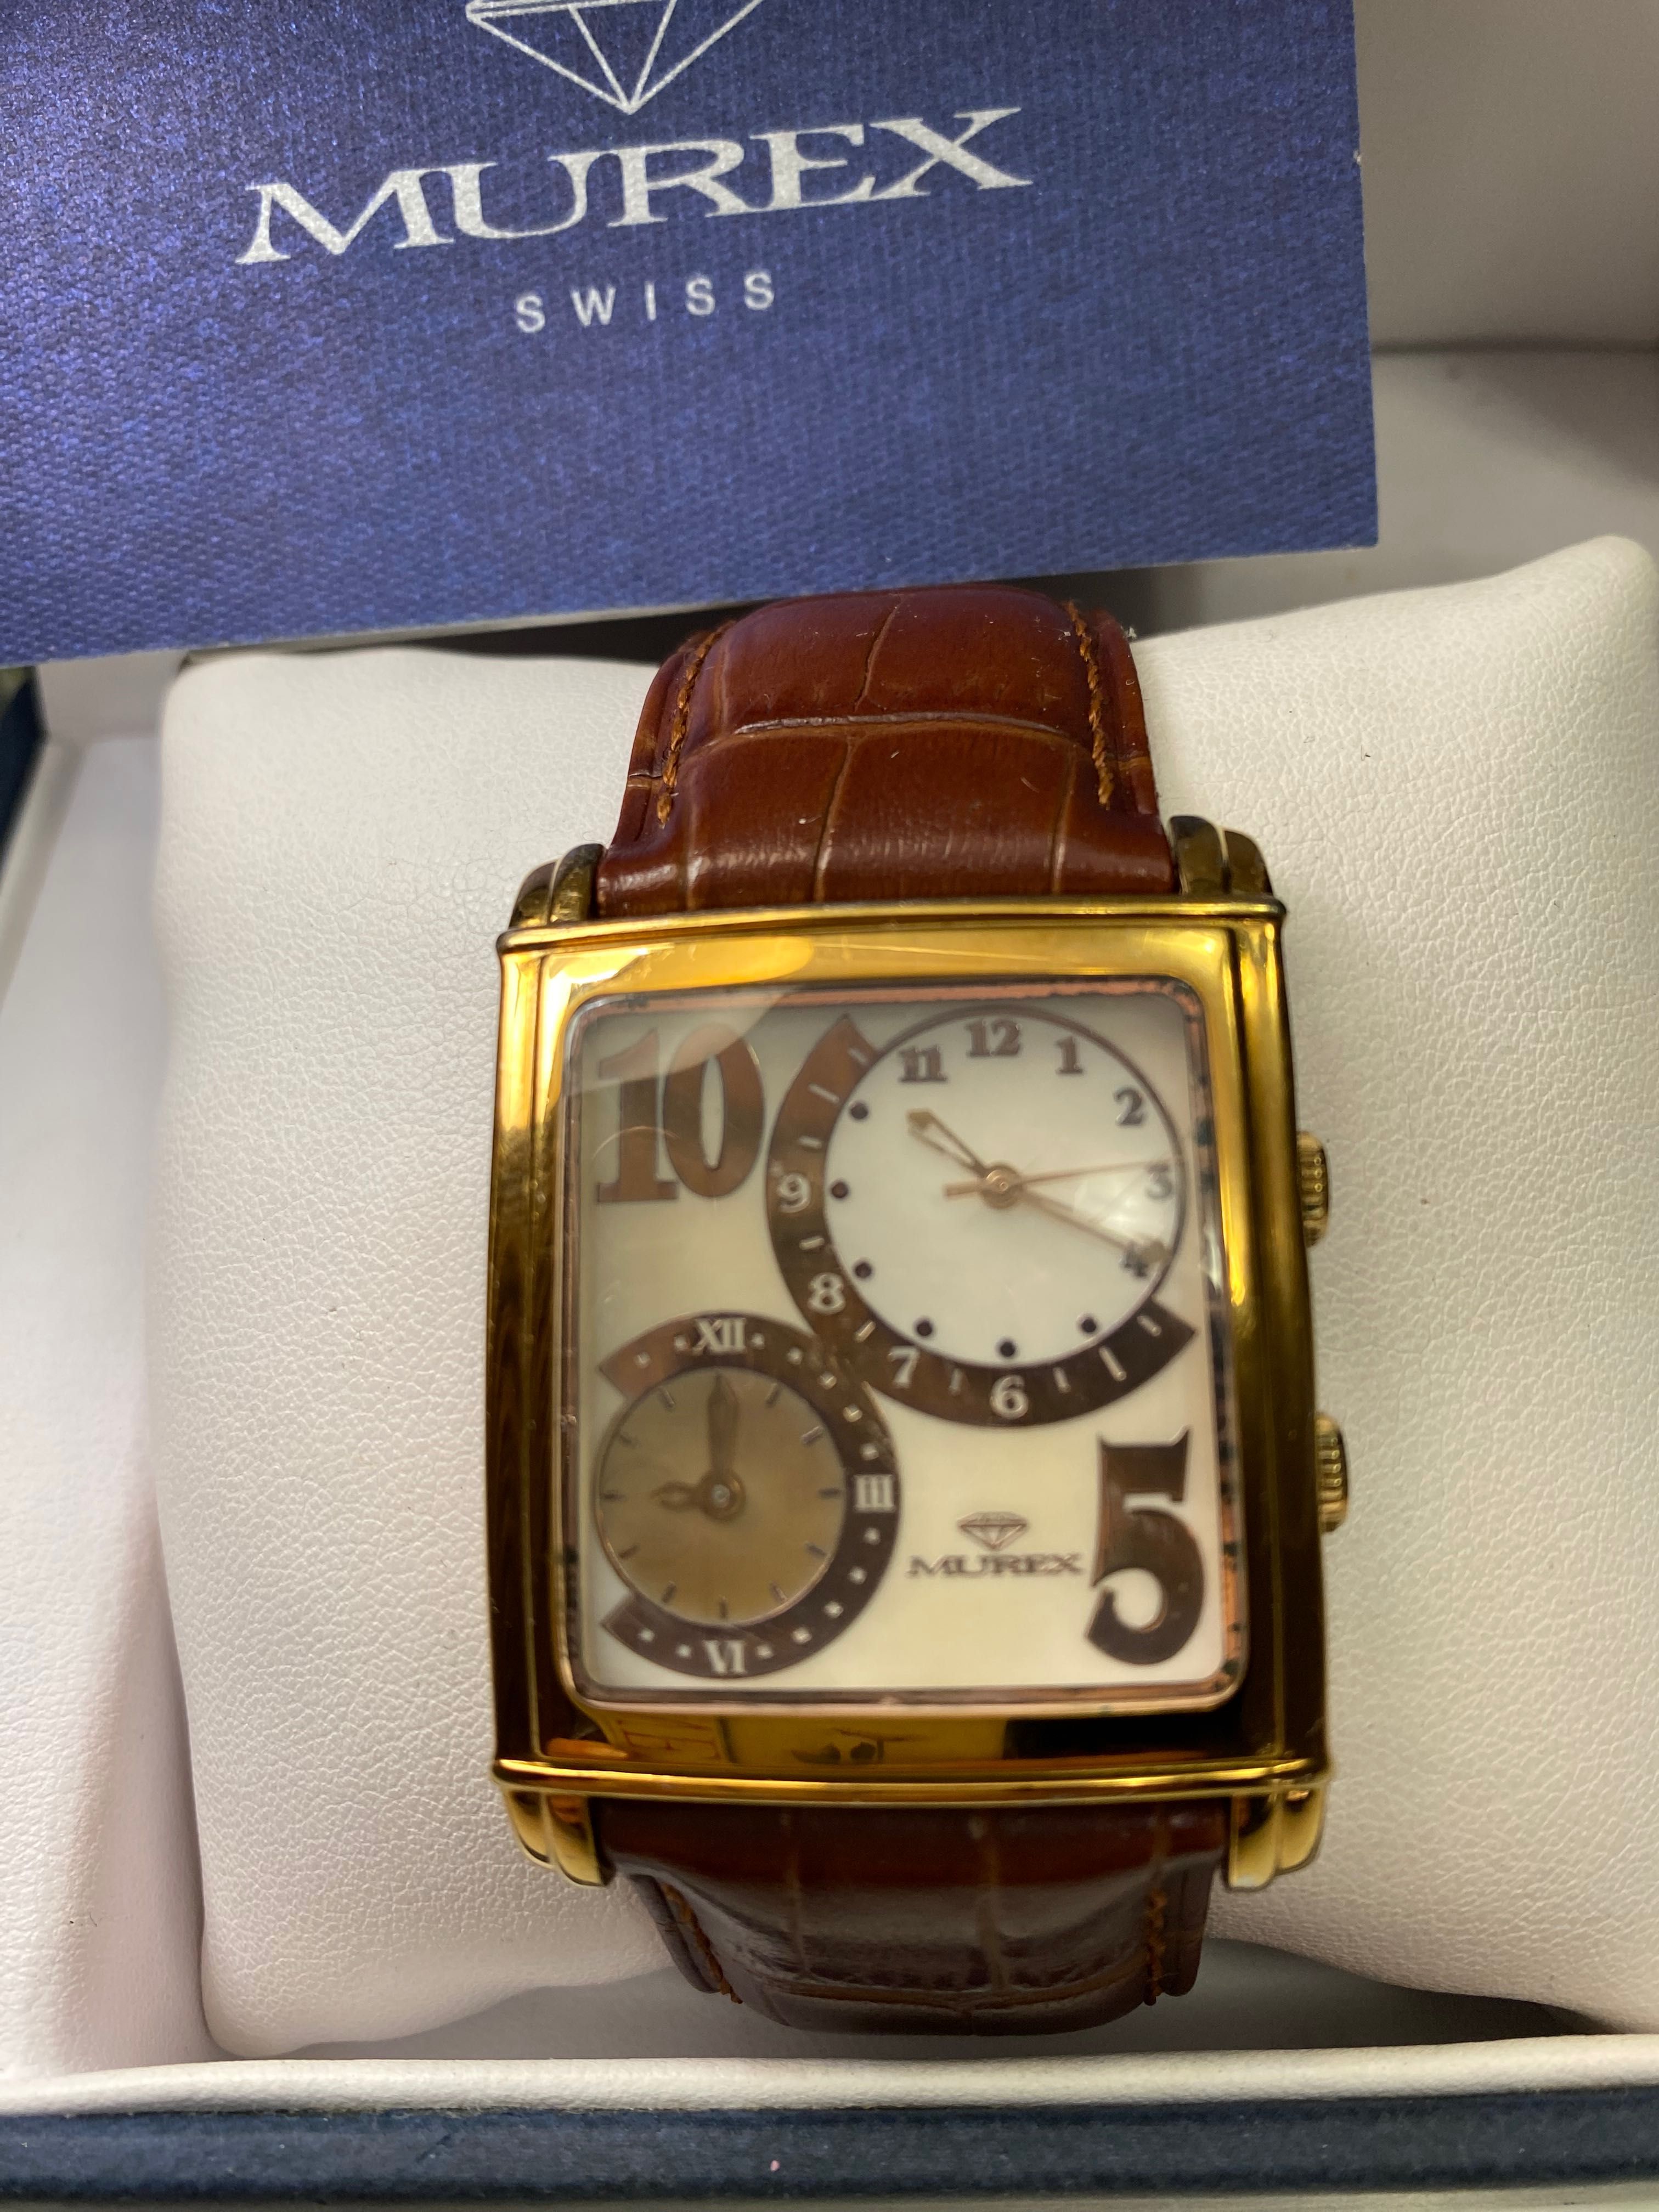 Продам швейцарские часы Murex Swiss RSM 728